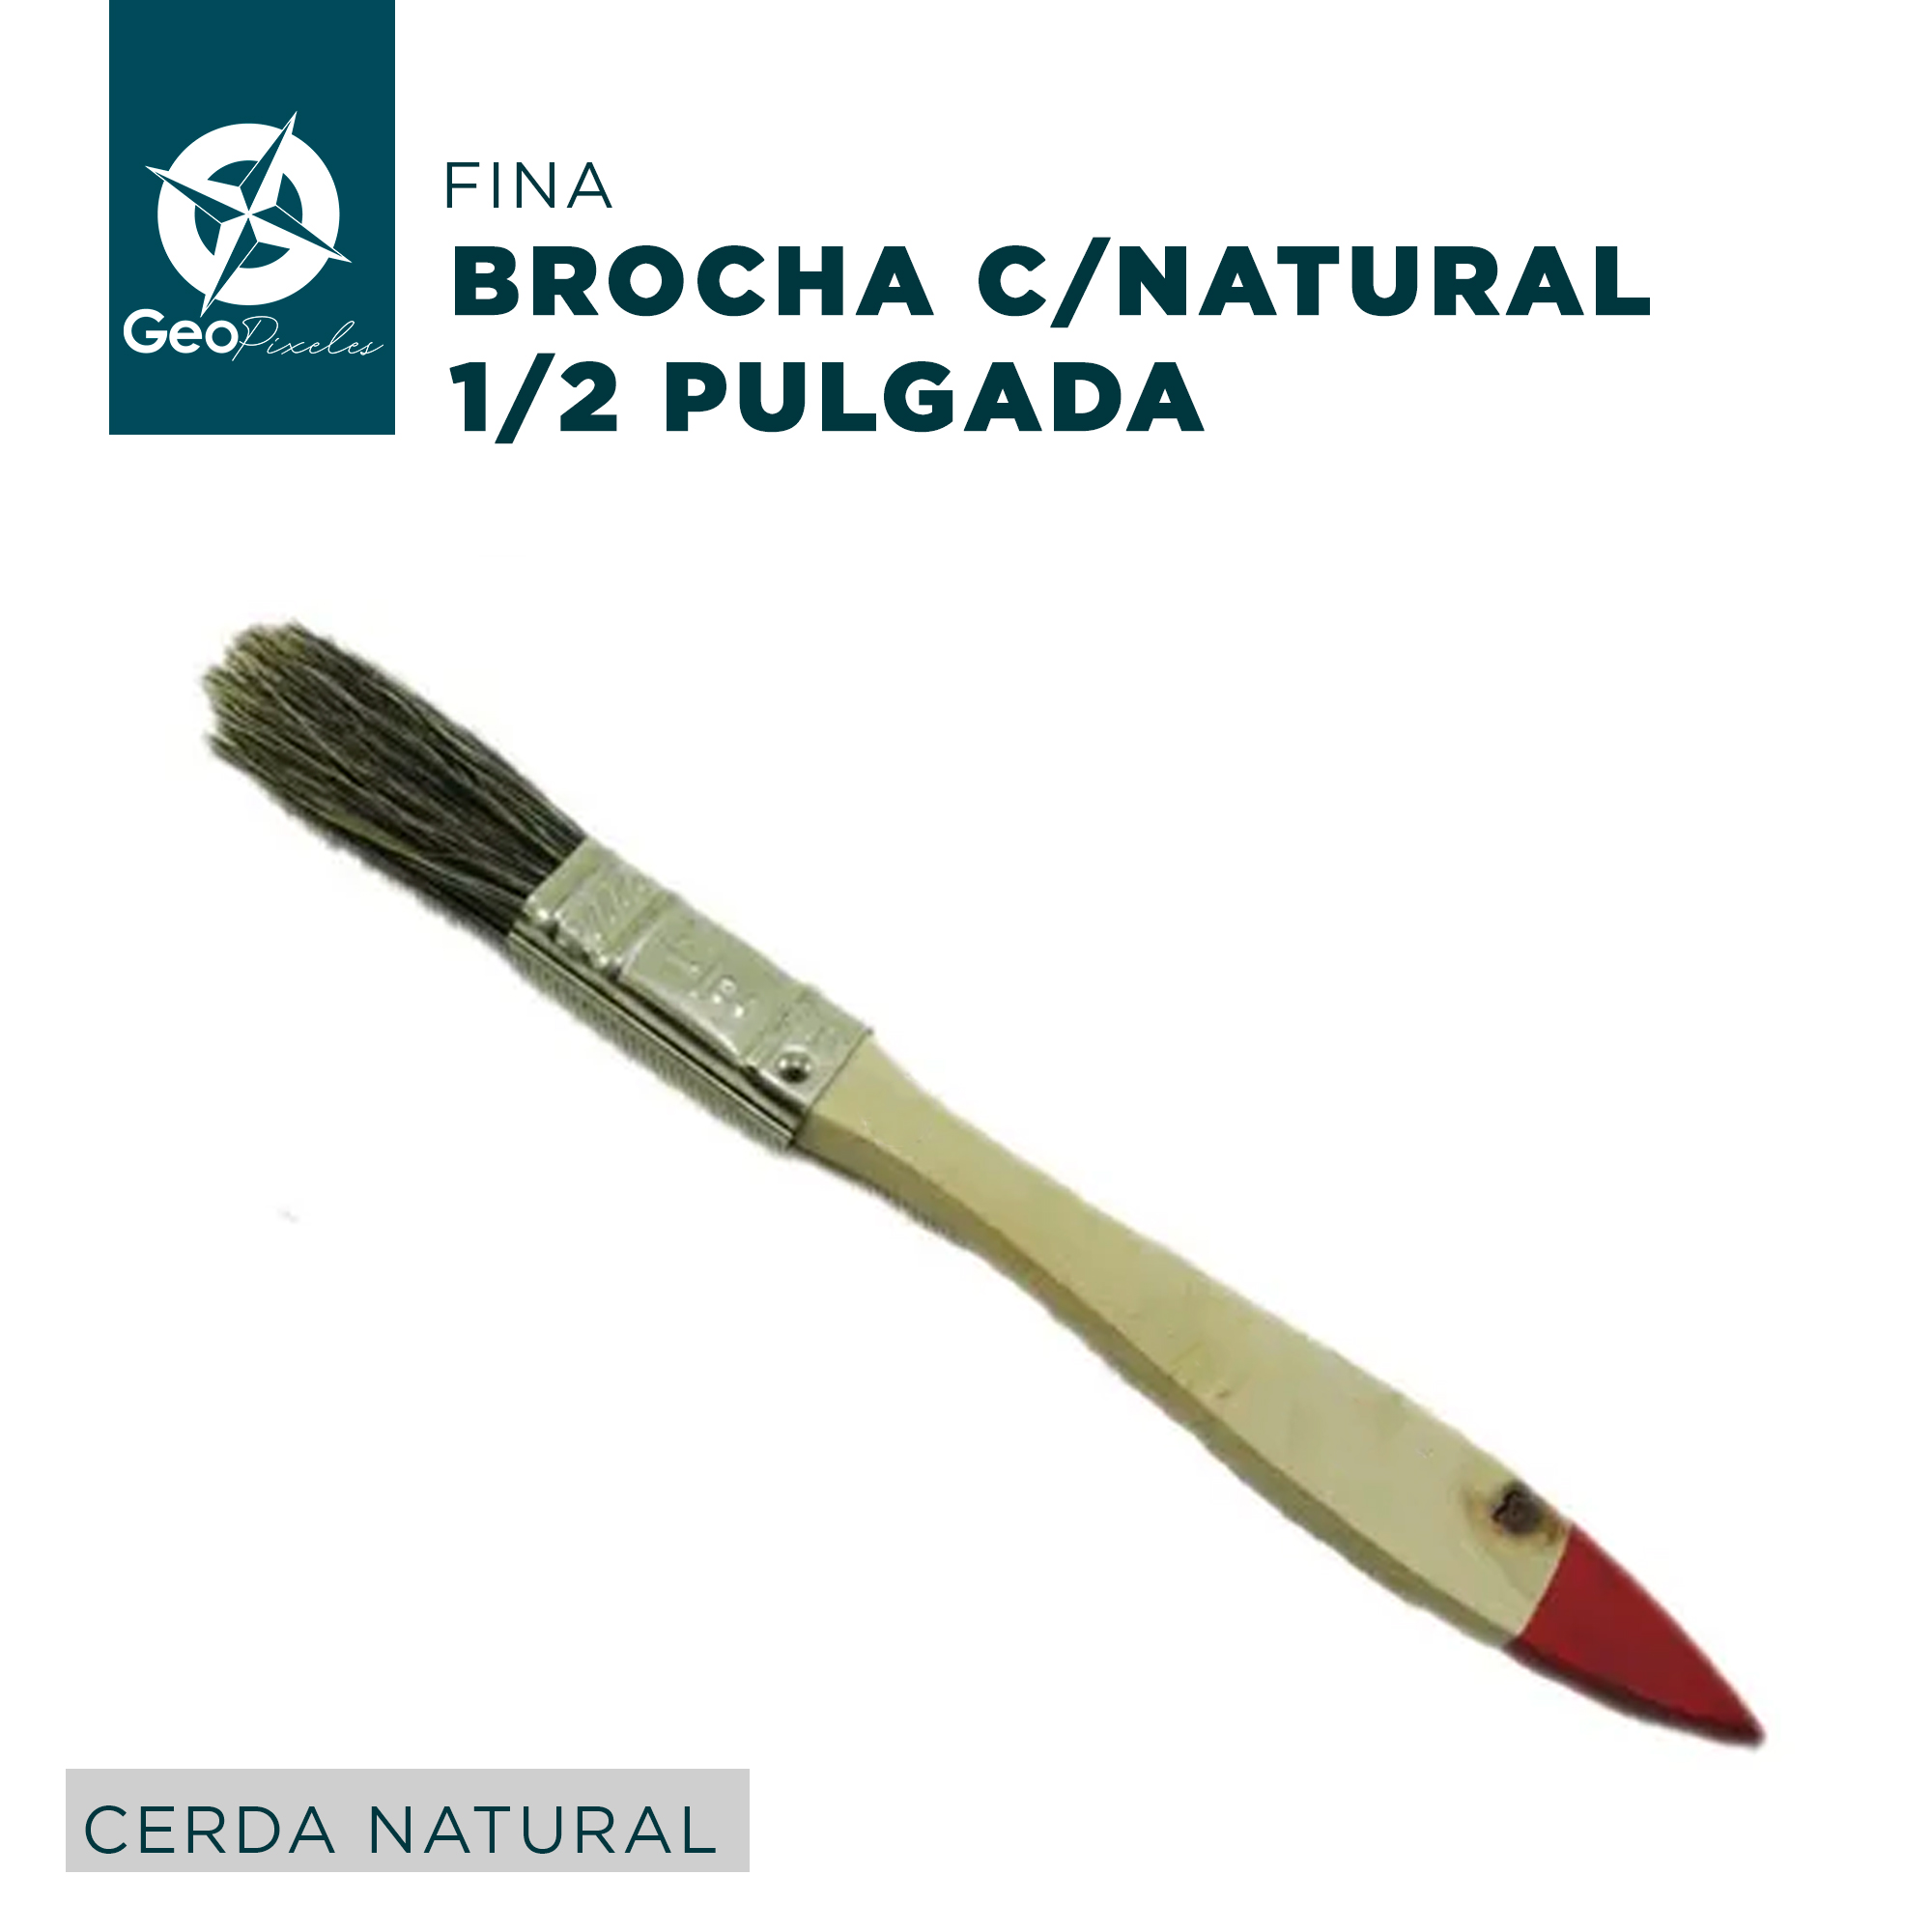 BROCHA DE CERDA NATURAL DE 1 1/2 PULGADA HDX